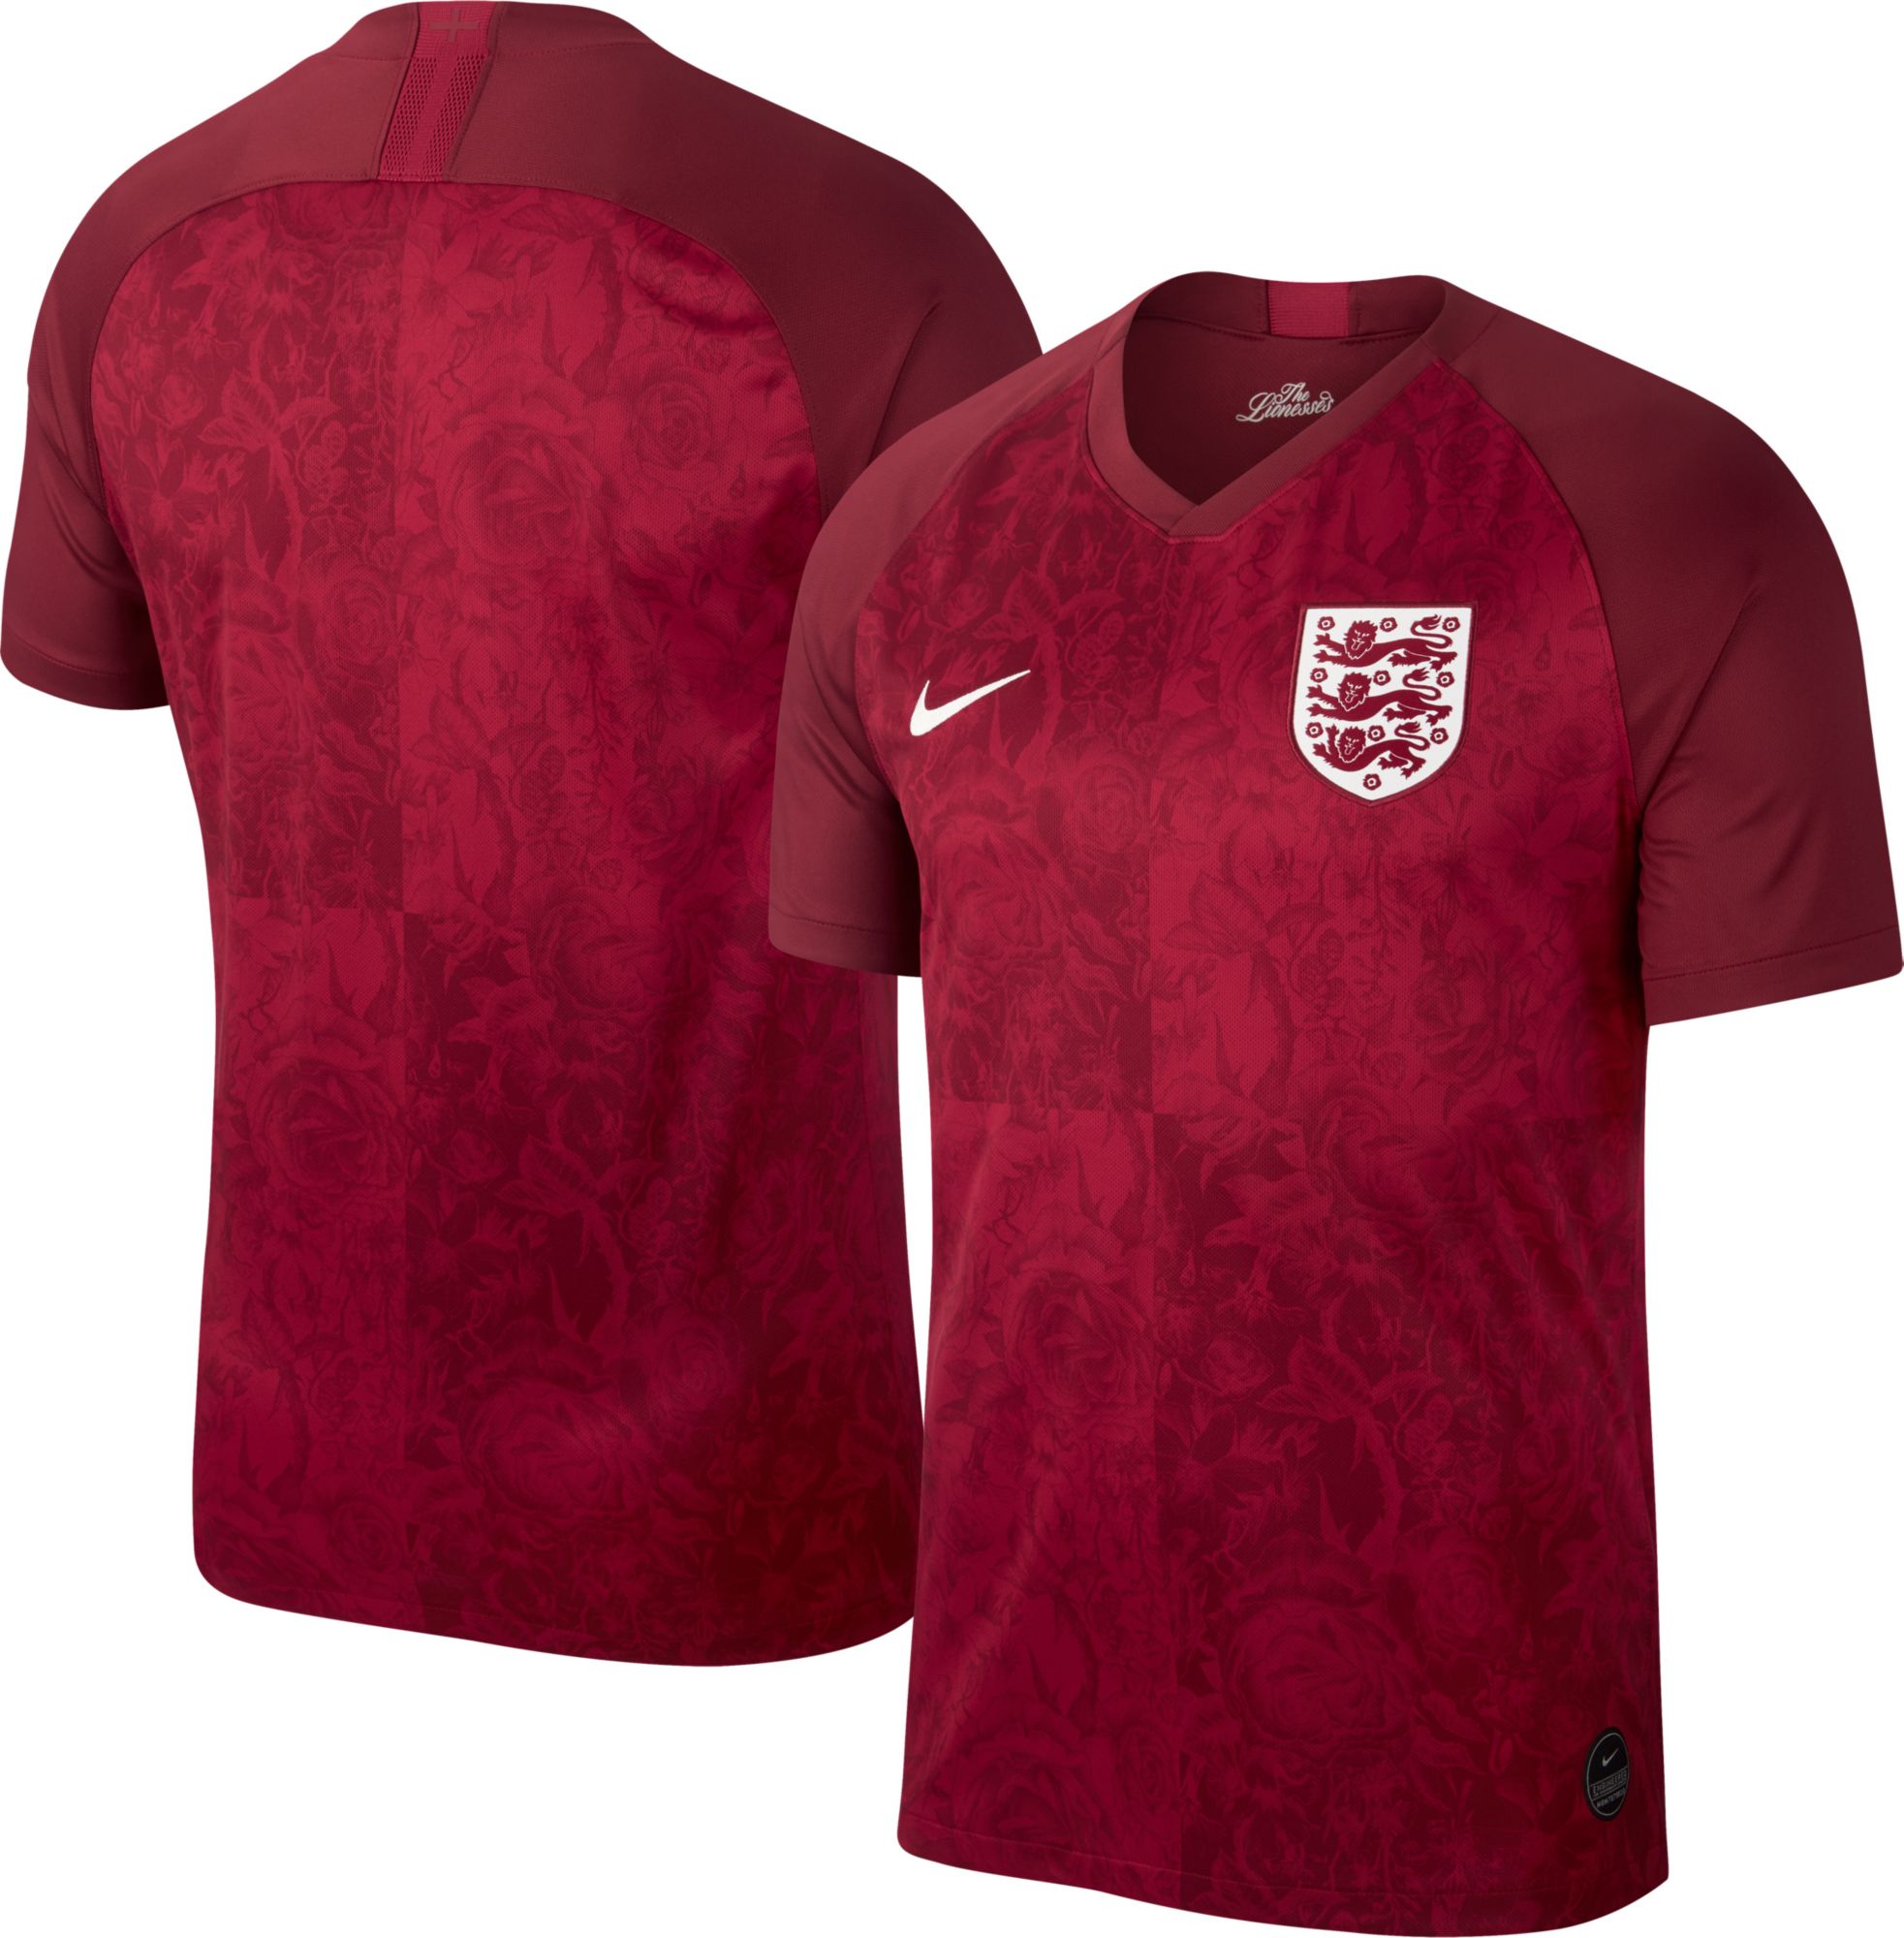 england women's soccer jersey